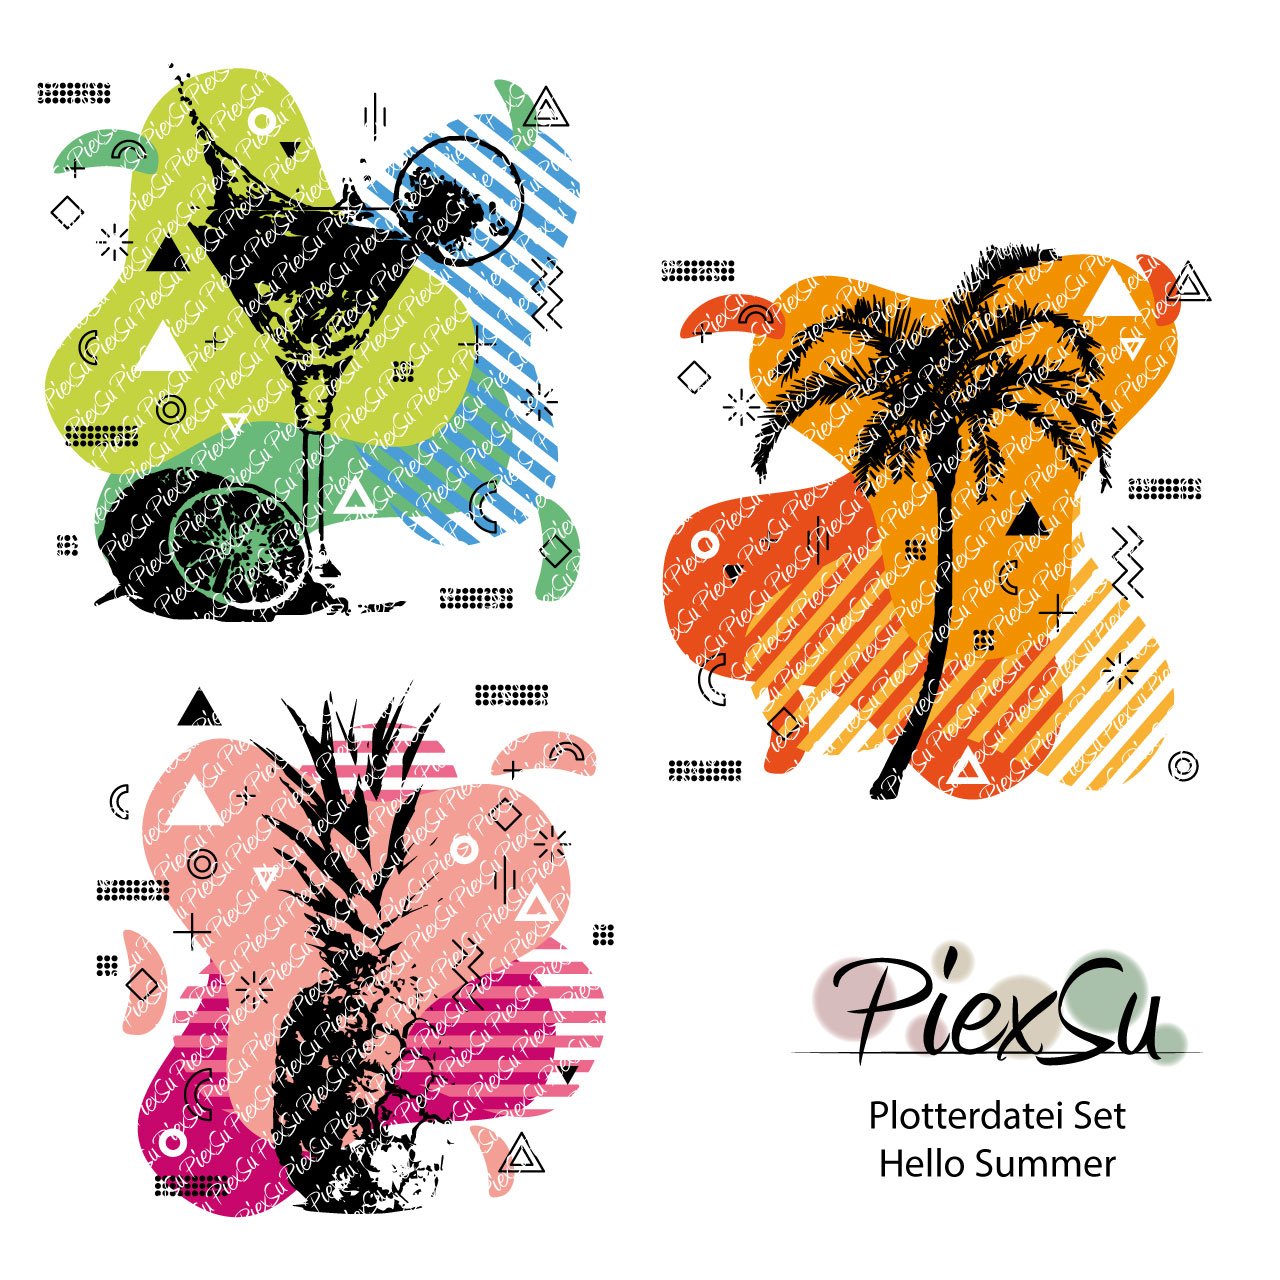 PiexSu-Plotterdatei-Set-Hello-Summer-plotten-dxf-svg-Titelbild